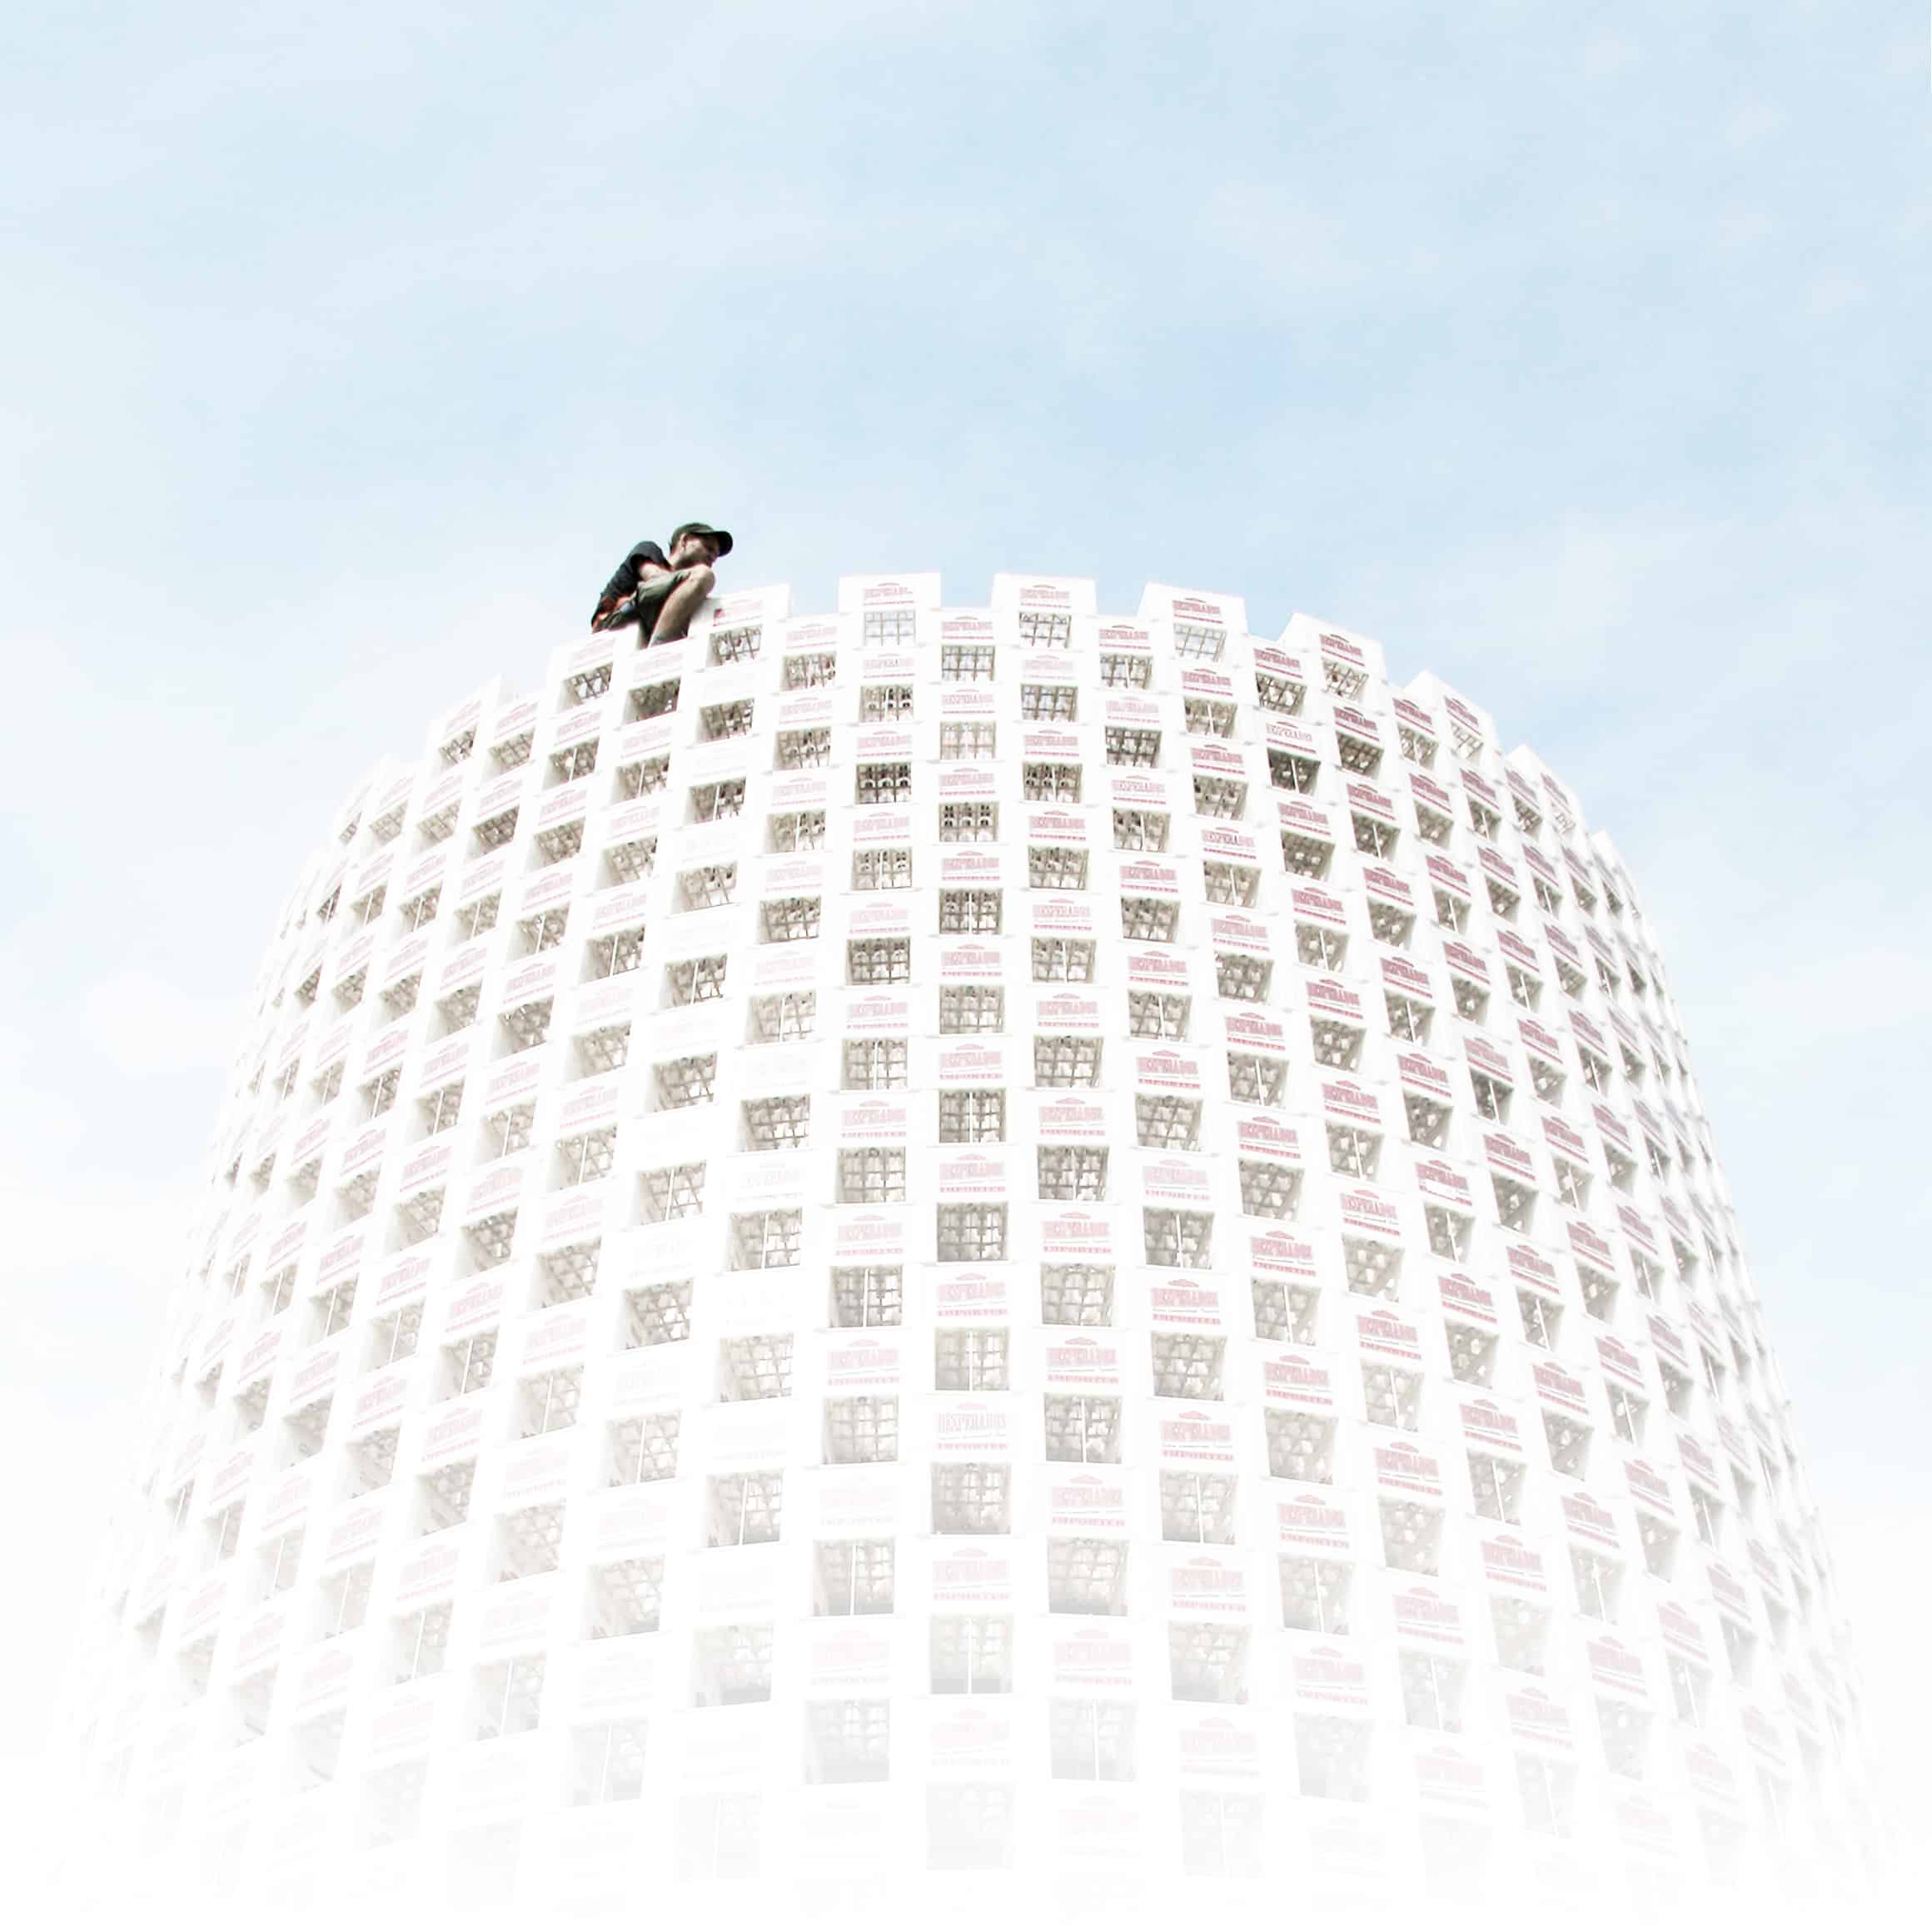 Surrealistisches Bild einer Person, die auf einem kugelförmigen Gebäude sitzt, dessen Oberfläche aus vielen kleinen Fenstern besteht, vor einem hellen, fast weißen Himmel. Ein Mann sitzt auf einem zylindrischen Turm aus gestapelten Bierkästen. Ein Mann sitzt auf einem zylindrischen Turm aus gestapelten Bierkästen.